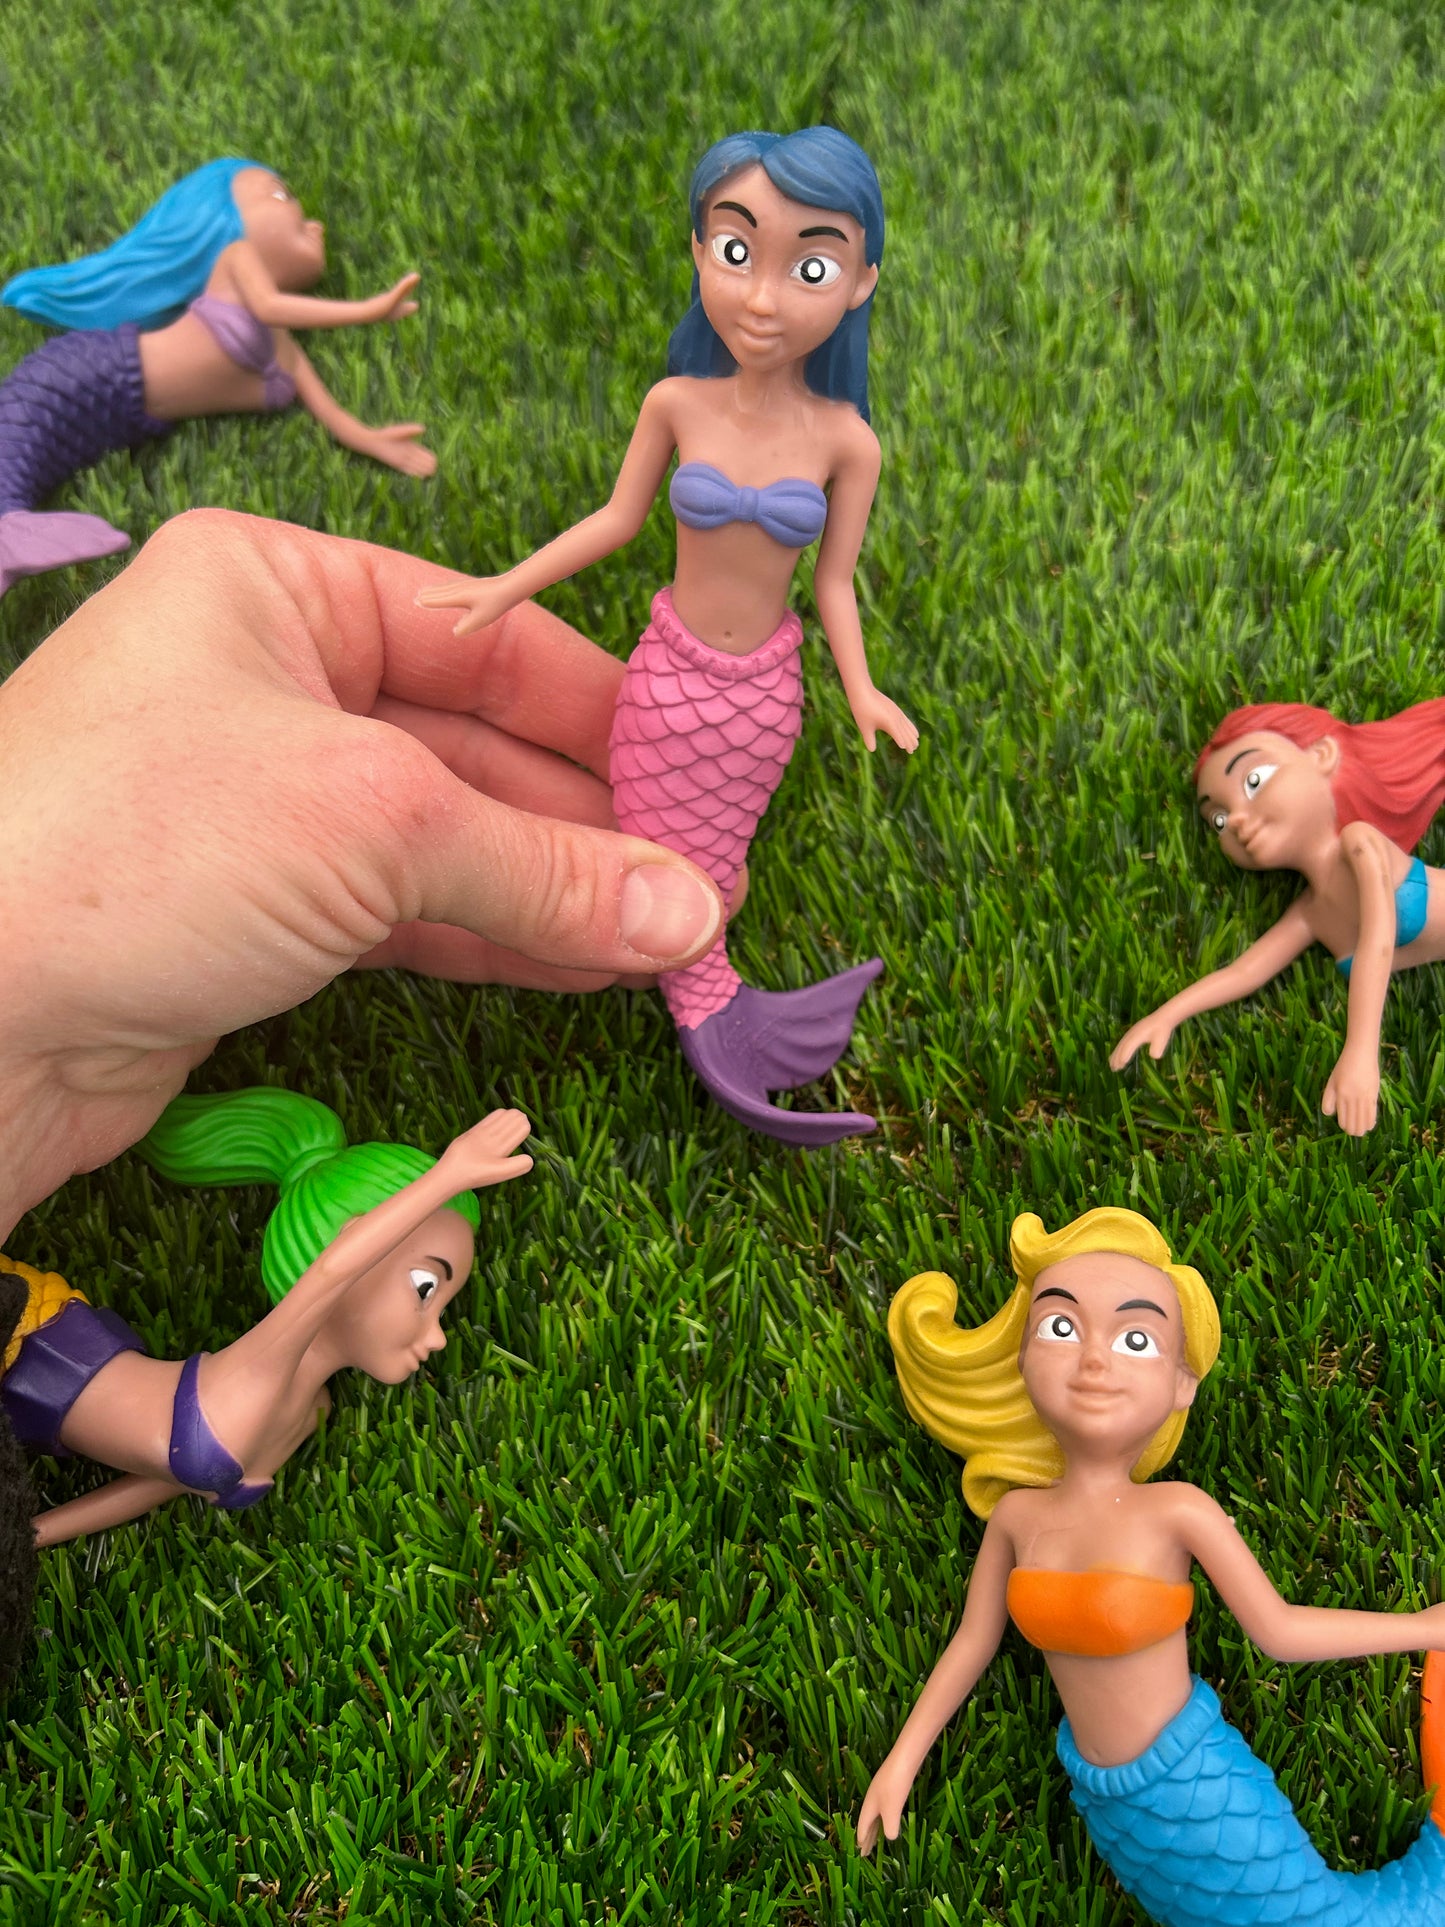 Mermaid Figurines